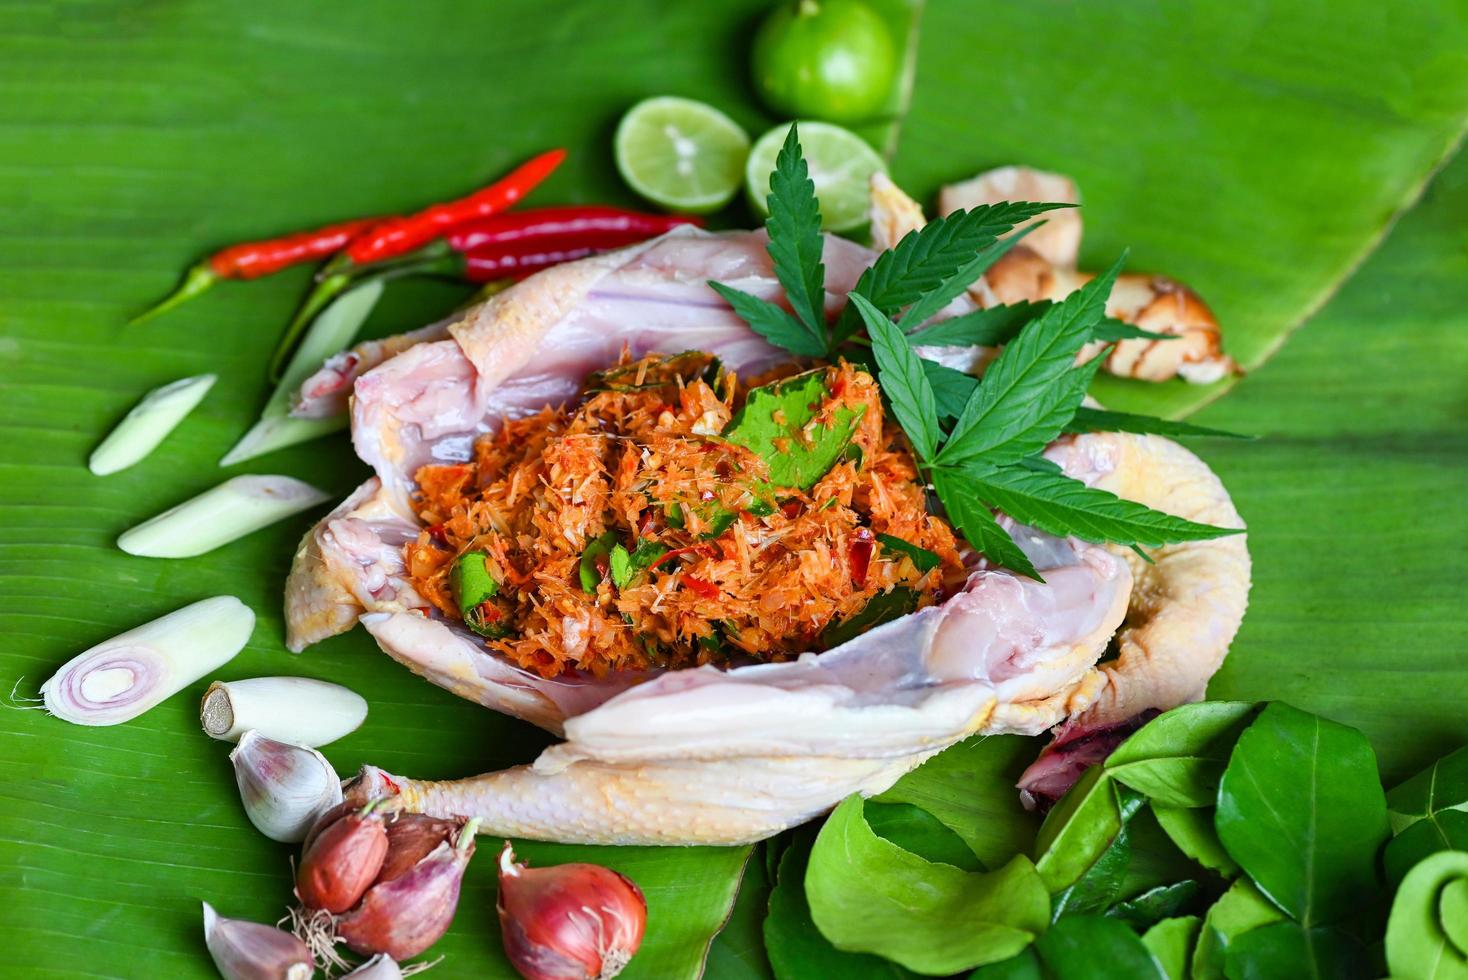 Cannabis-Lebensmittel zum Kochen mit frischem Hähnchen-Cannabisblatt, Marihuana-Gemüse, Kräutern und Gewürzen, Zutaten auf Bananenblatthintergrund, rohe Hühnchen-Hanfblattpflanze mit cbd-Kräutern - thailändisches Essen foto